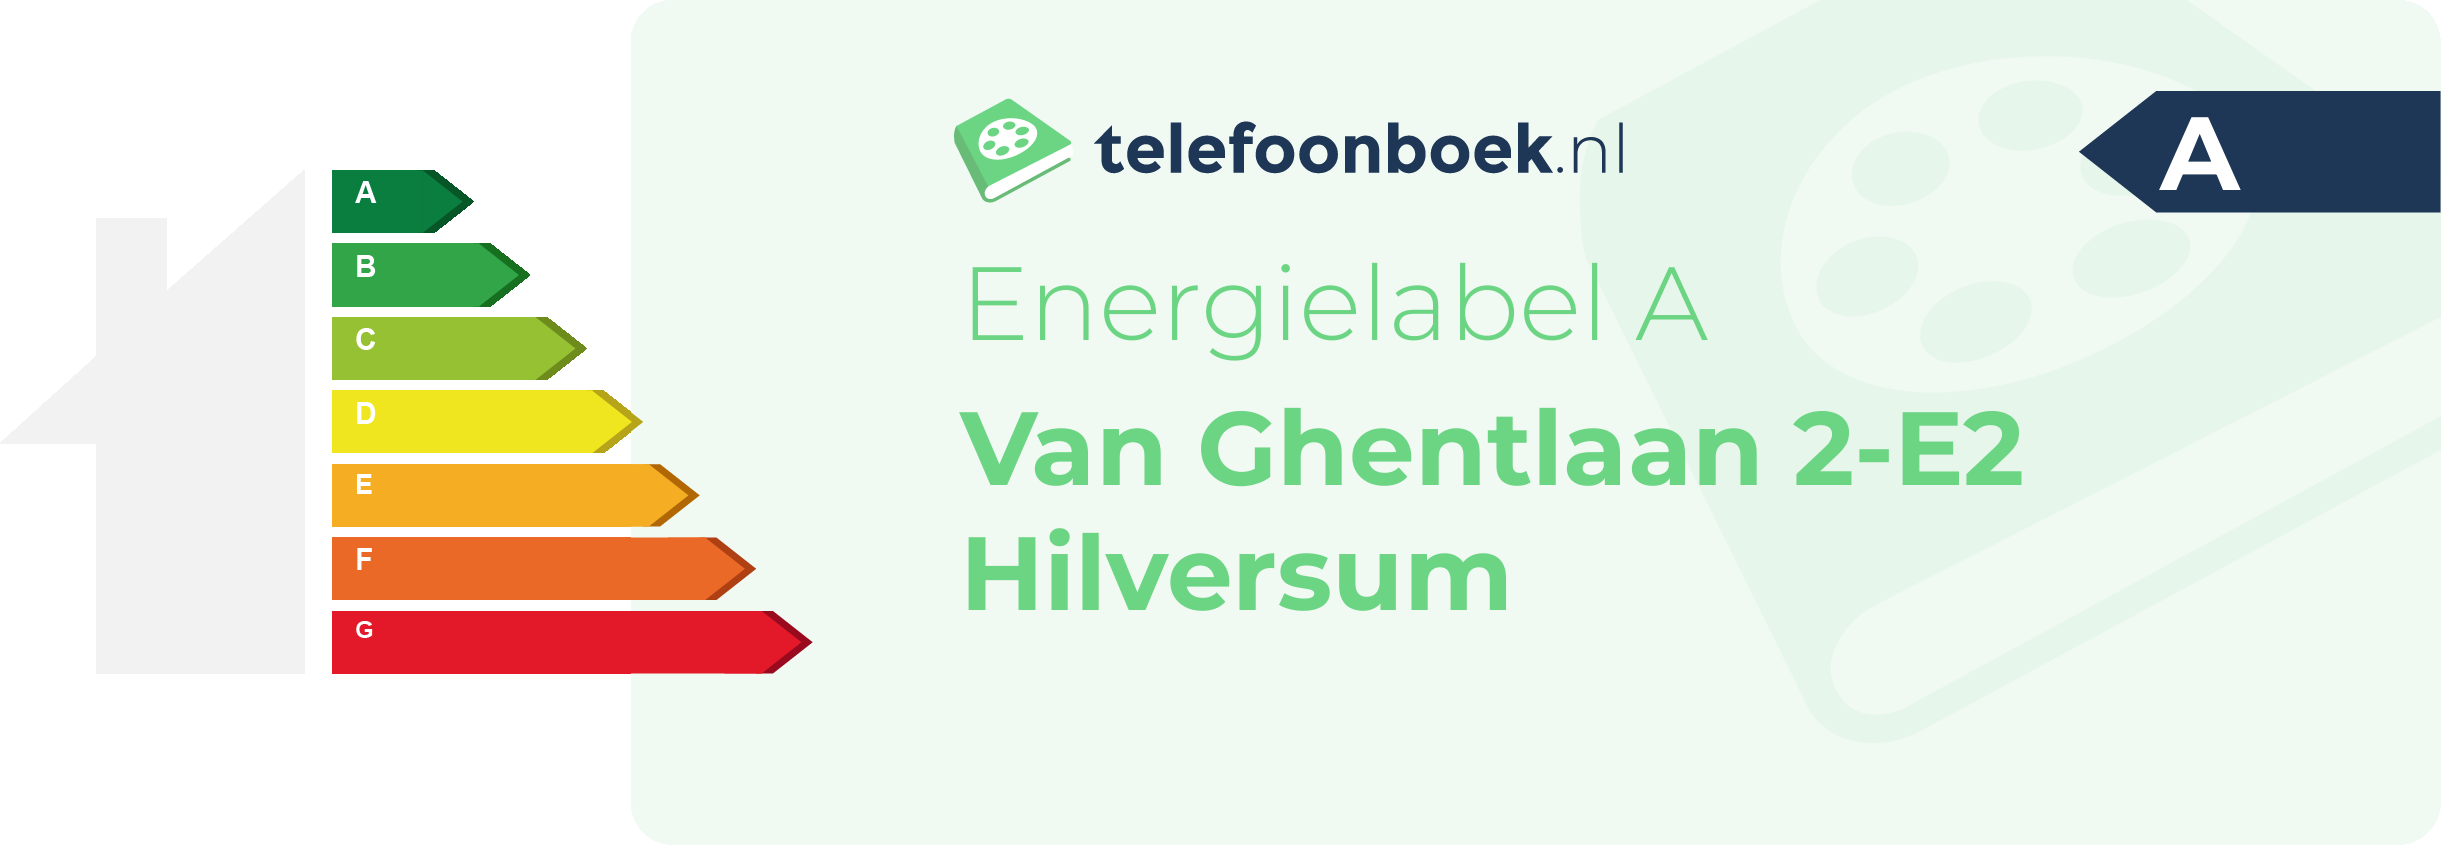 Energielabel Van Ghentlaan 2-E2 Hilversum